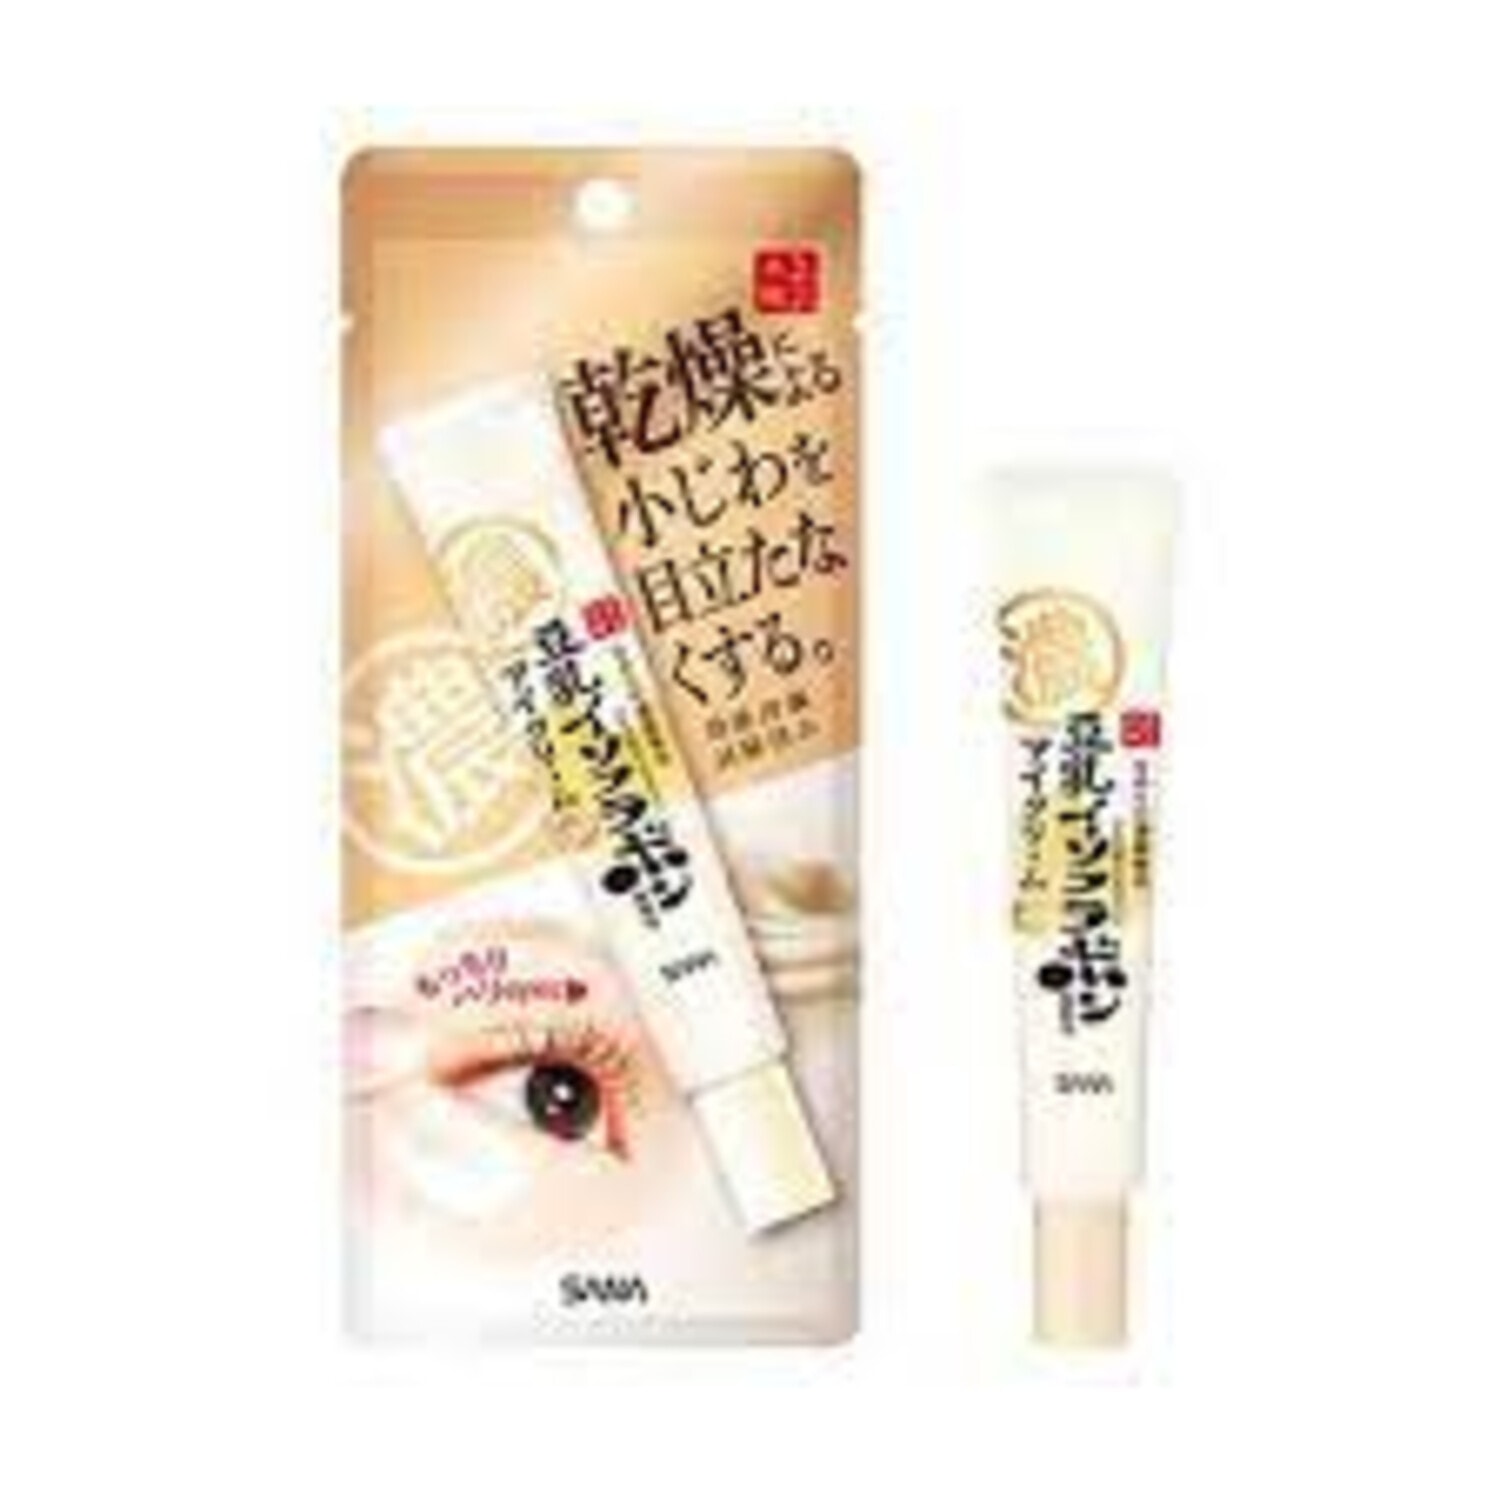 Meishoku Wrinkle Eye Cream Увлажняющий и подтягивающий крем - эссенция с ретинолом и изофлавонами сои, 20 г. / 485794 (1Т)